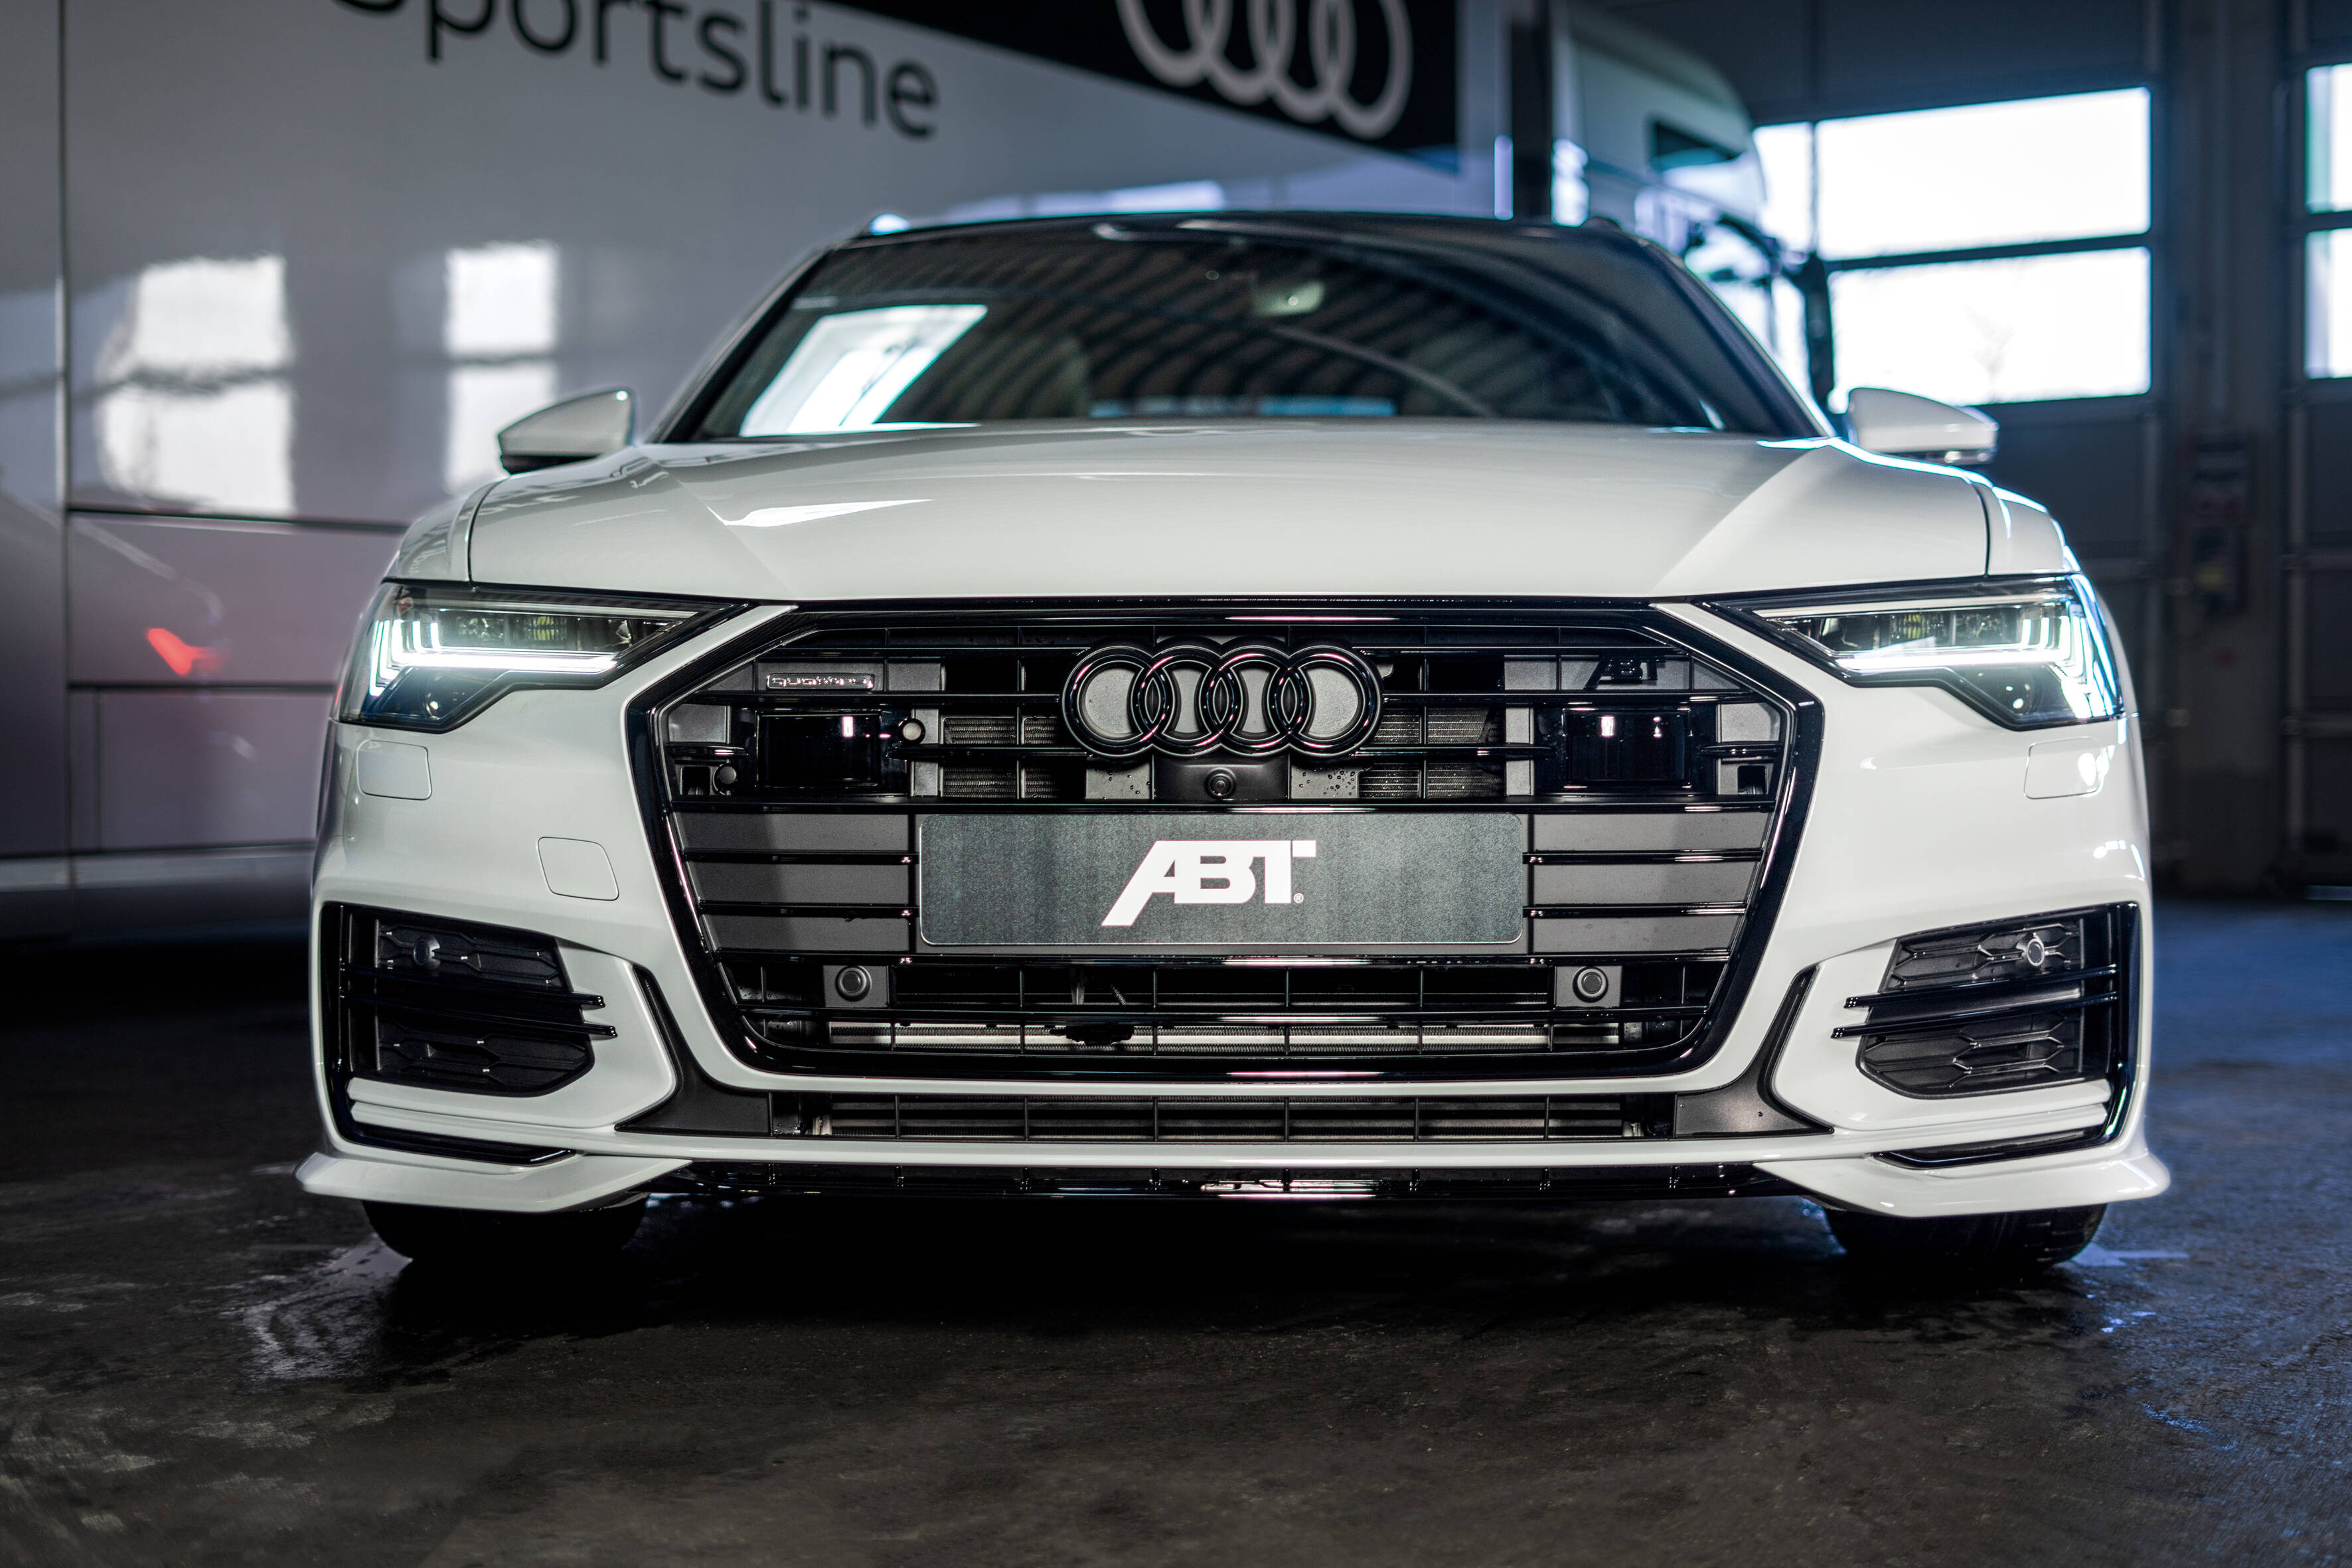 304km/h im neuen Audi A6 50 TDI - Erstes echtes Tuning by JD Performance   304km/h im neuen A6 50TDI!? 😮😮😮 Mit Stolz dürfen wir behaupten, einer  der ersten Tuner zu sein